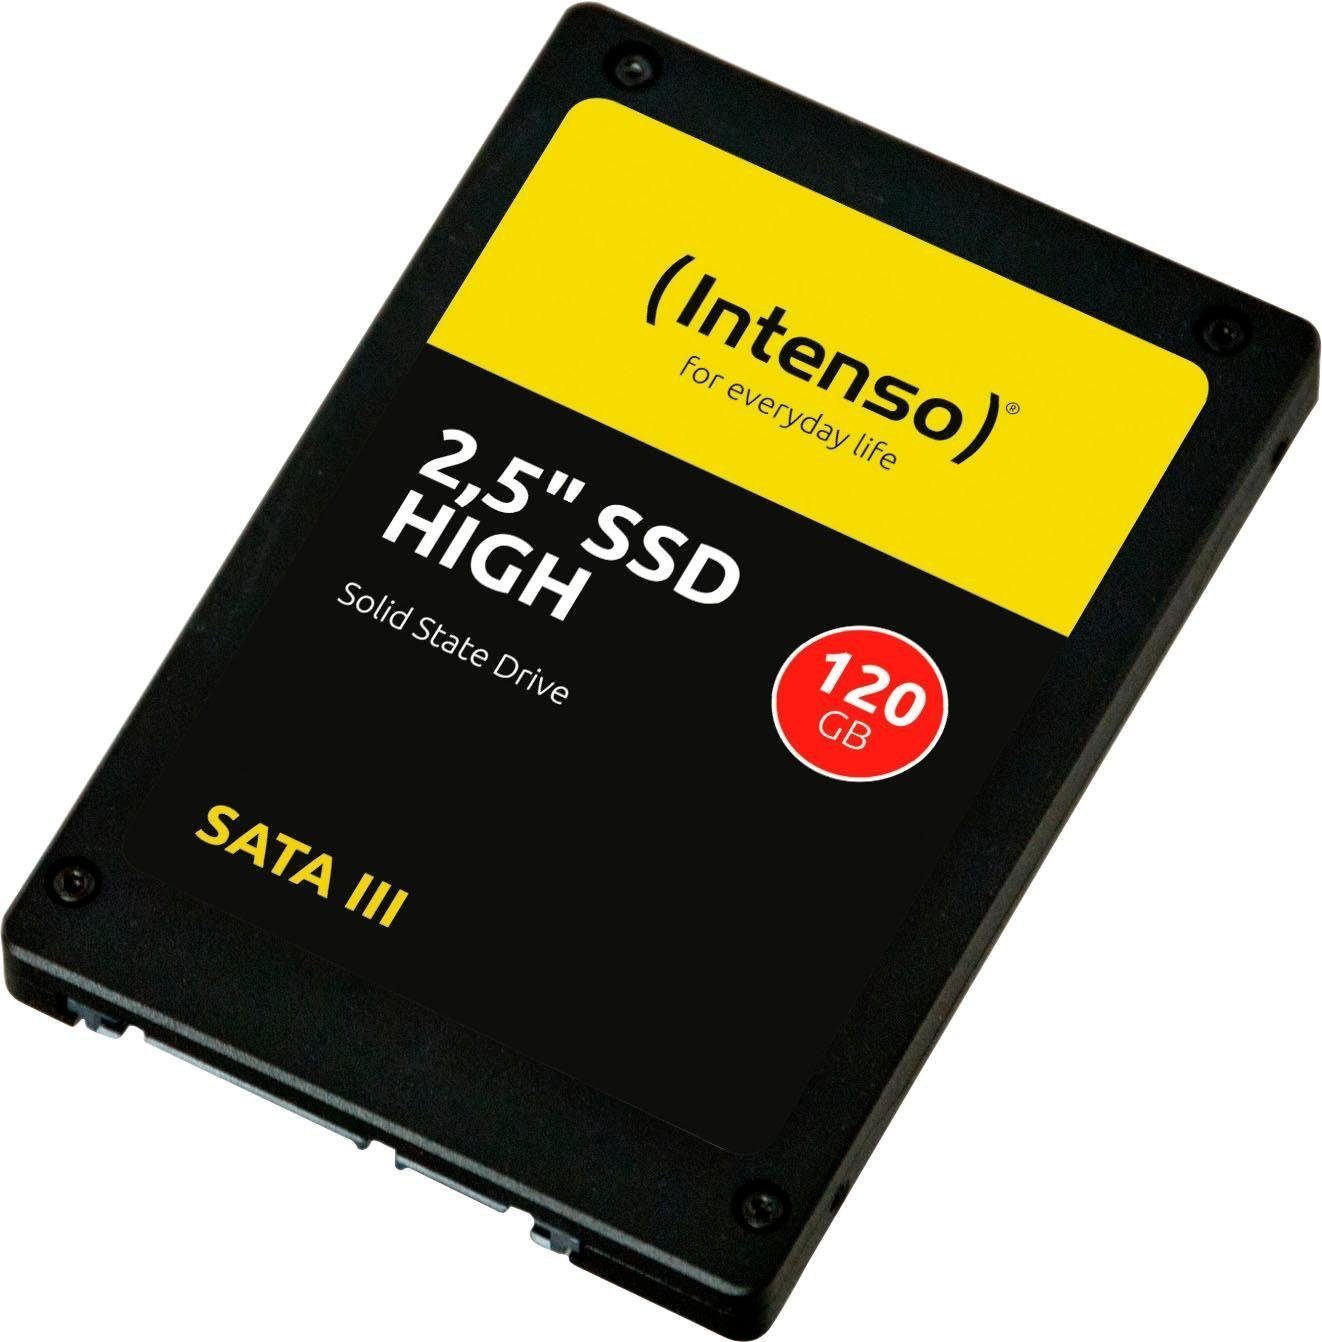 Intenso HIGH interne SSD (120 480 2,5" Schreibgeschwindigkeit MB/S Lesegeschwindigkeit, GB) 520 MB/S